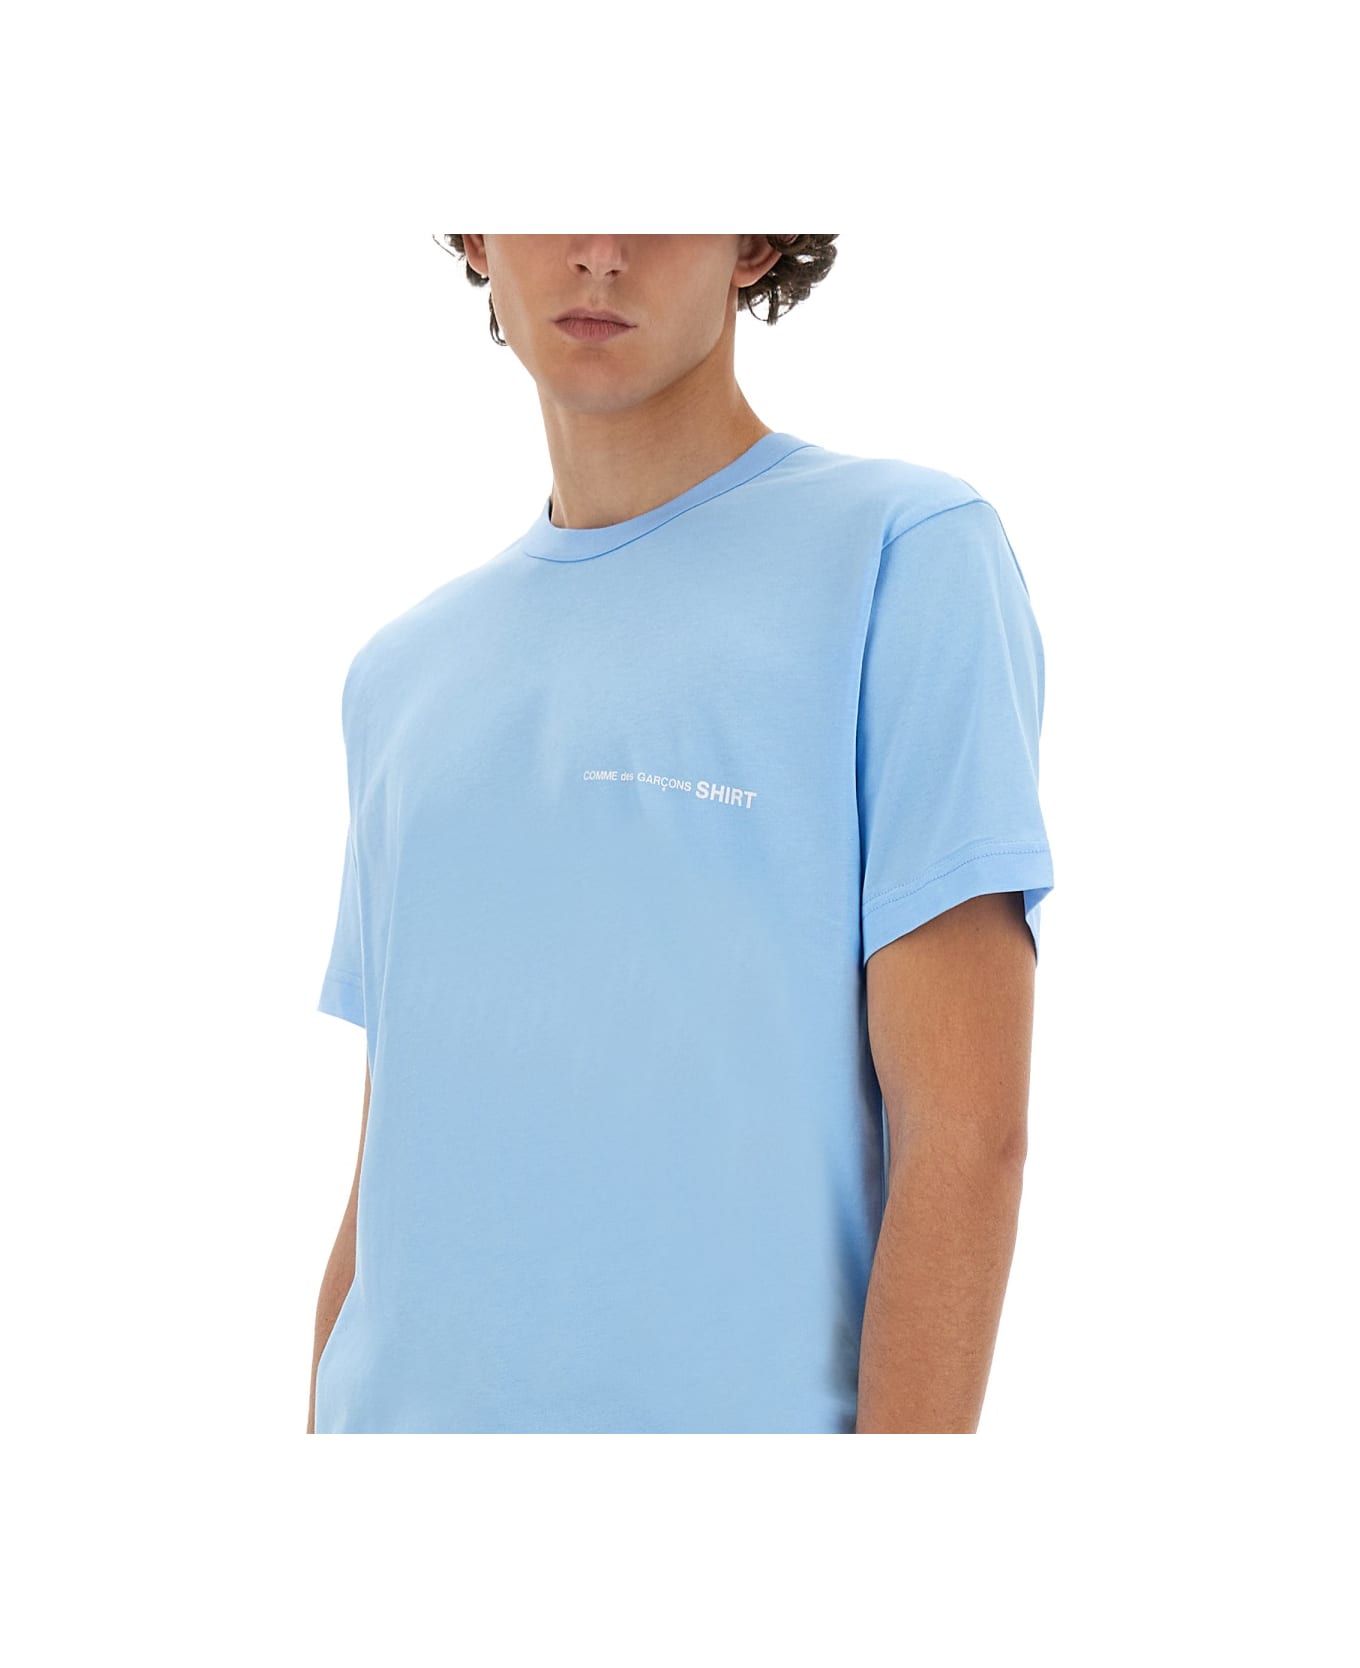 Comme des Garçons Shirt Jersey T-shirt - BLUE シャツ